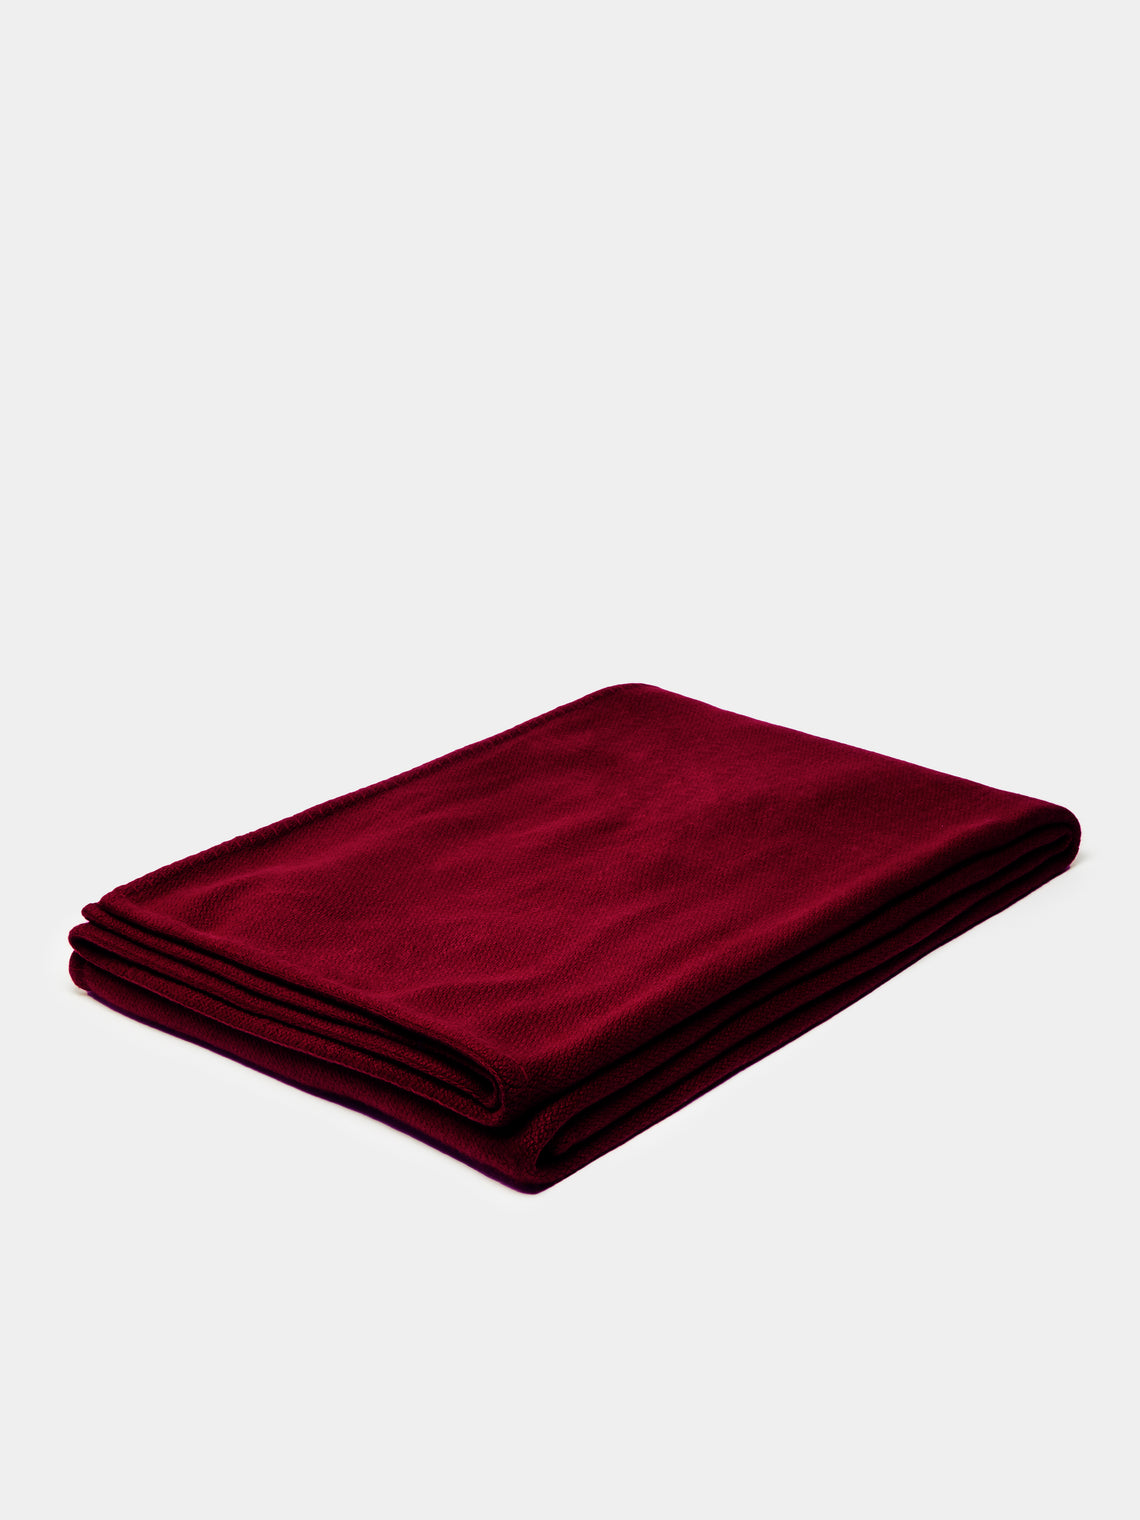 Rose Uniacke - Hand-Dyed Cashmere Large Blanket - Burgundy - ABASK